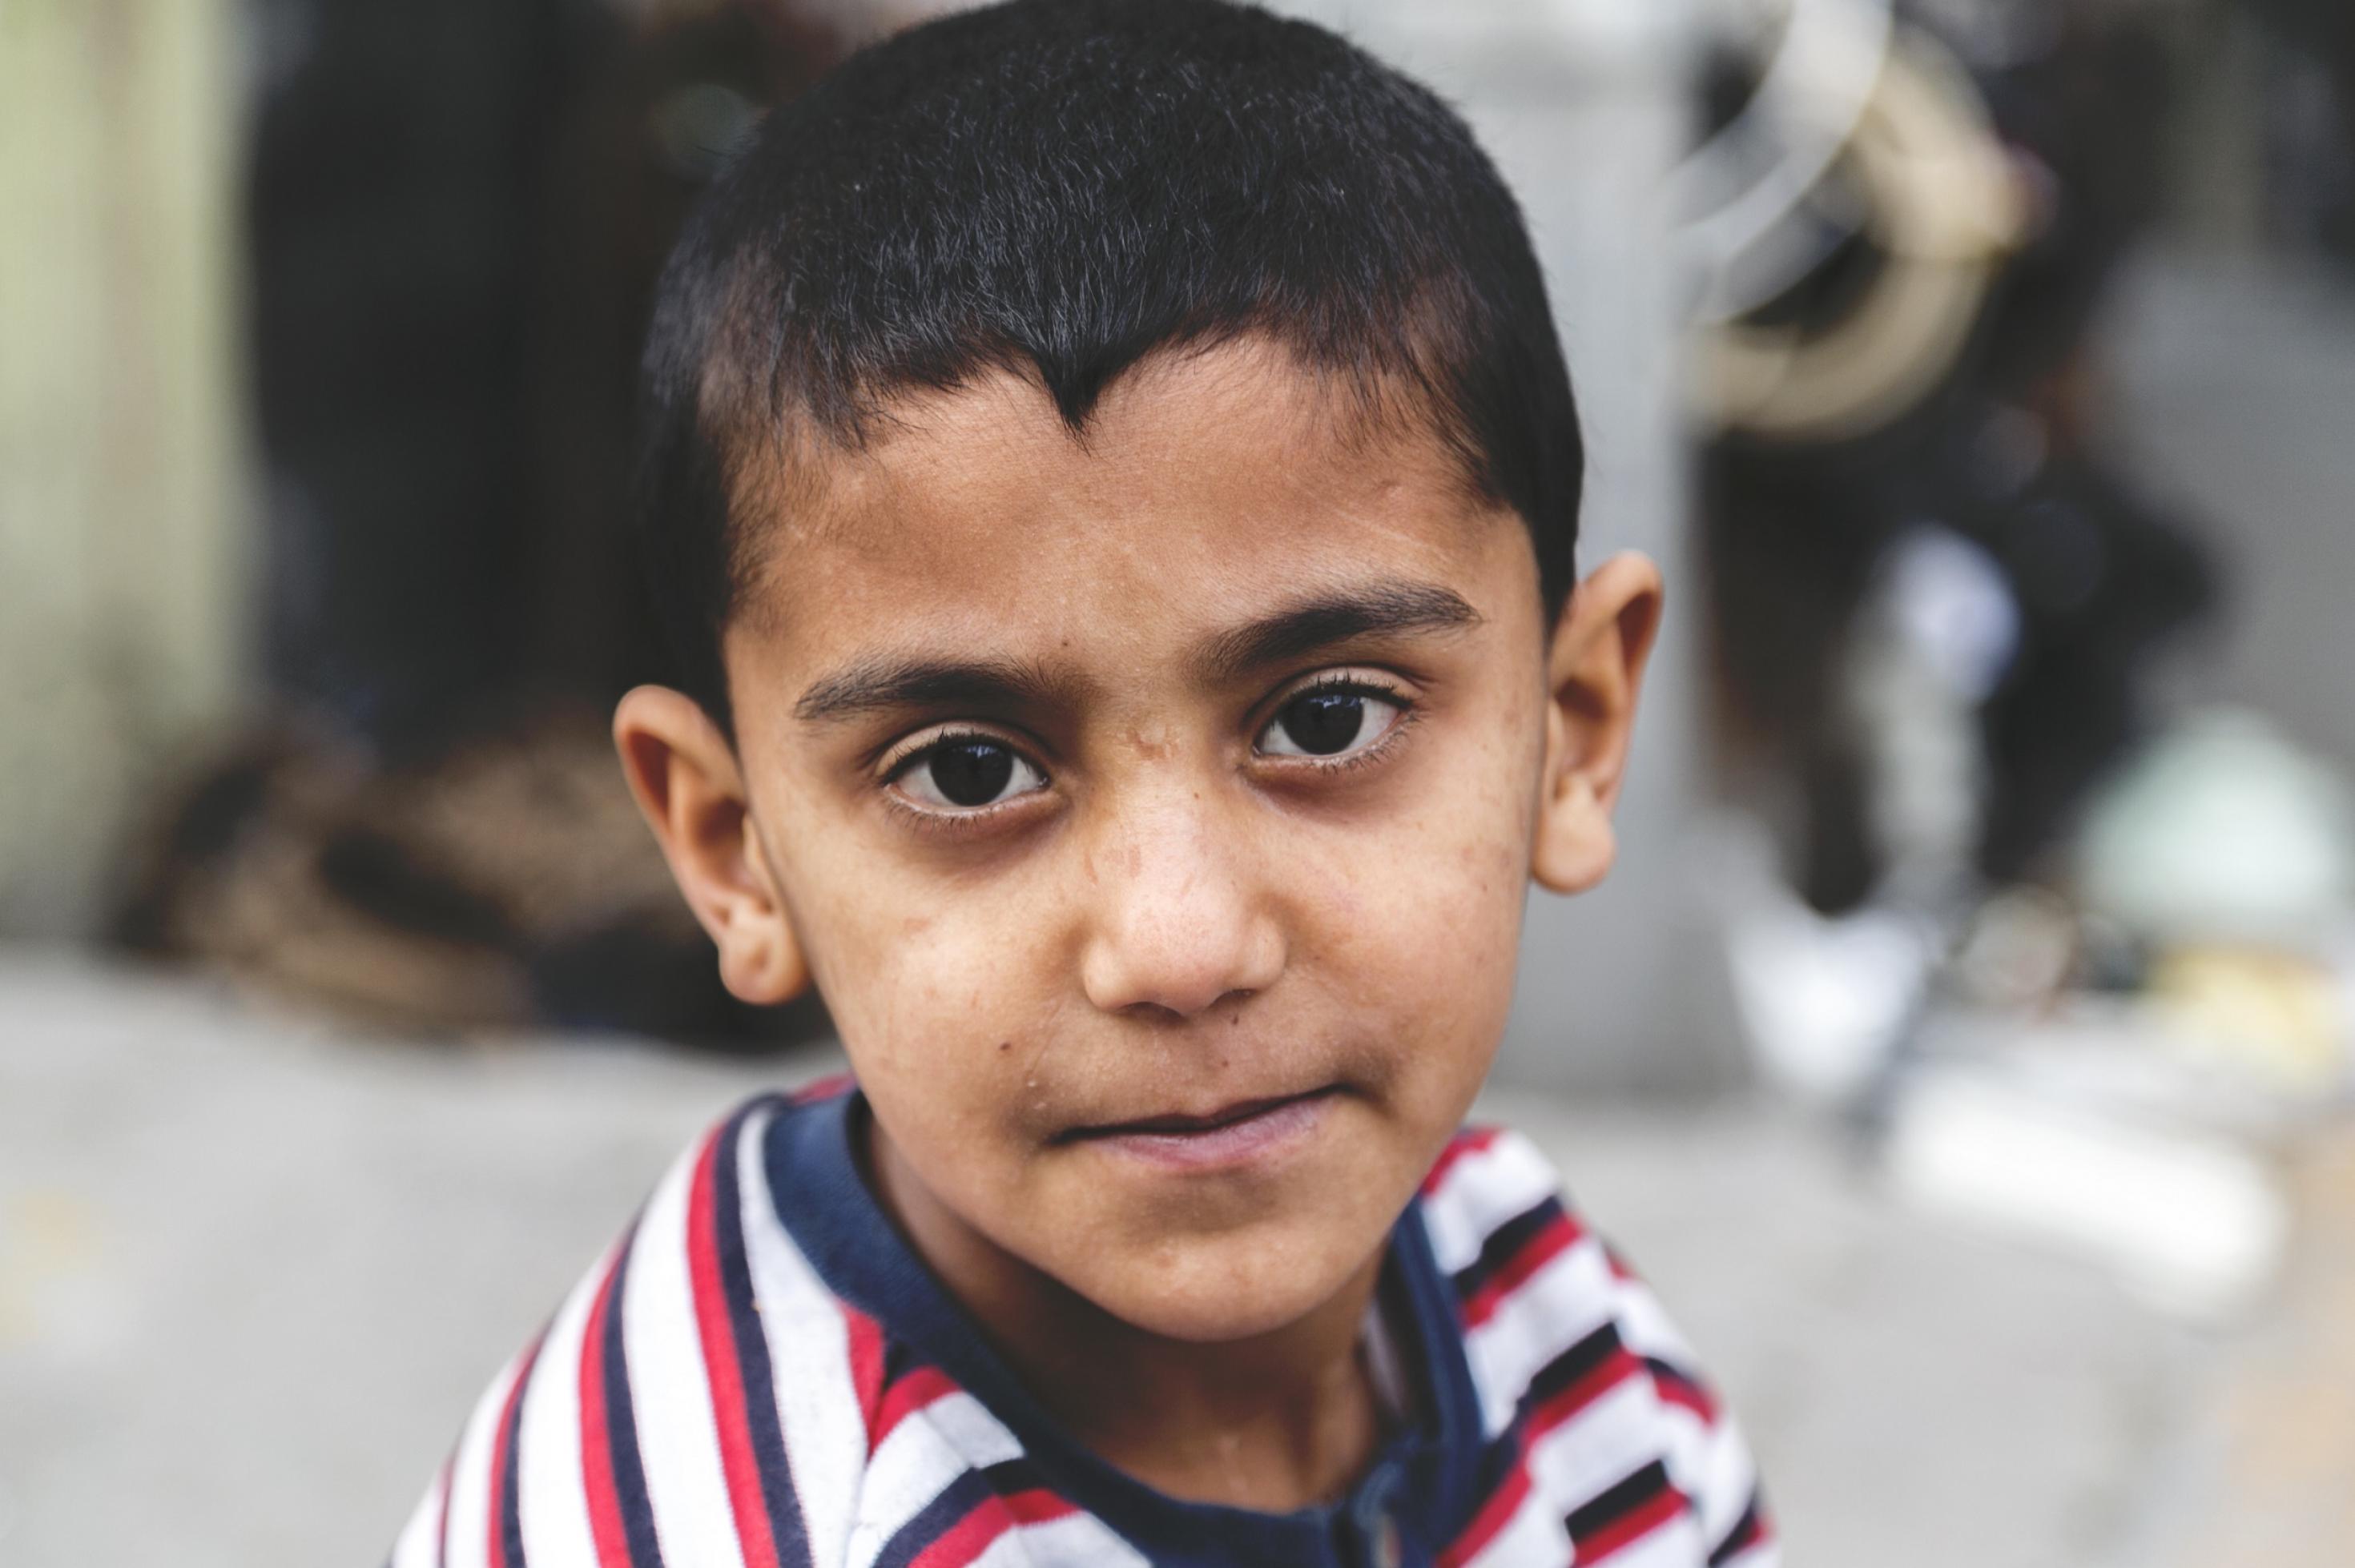 Ein kleiner Junge mit gestreiftem T-Shirt und kurzen dunklen Haaren schaut mit traurigen großen braunen Augen direkt in die Kamera.